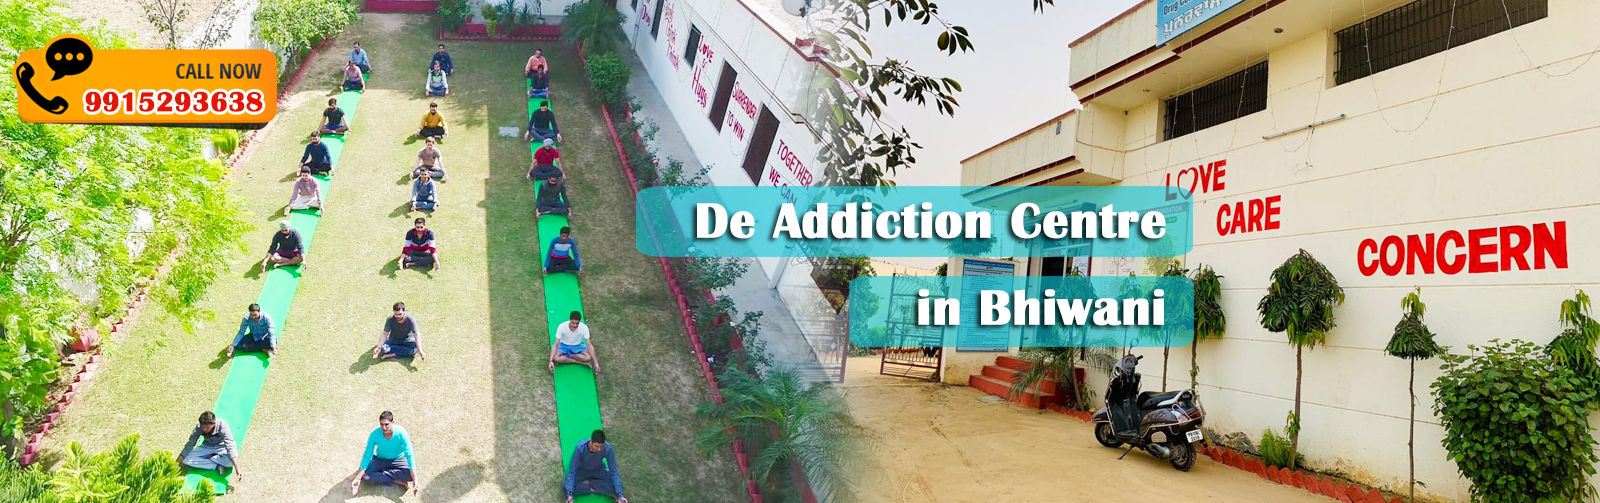 De Addiction Centre in Bhiwani